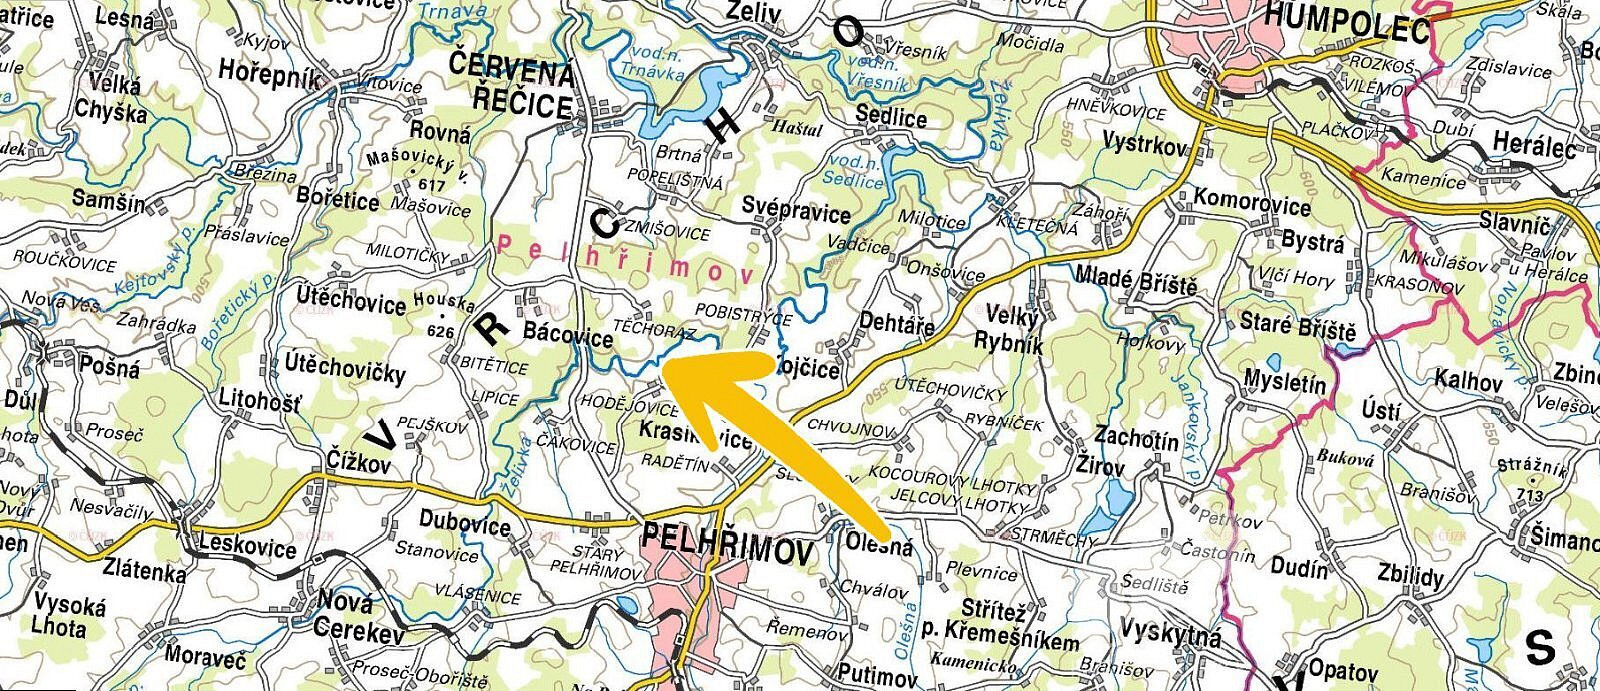 Pelhřimov - Hodějovice